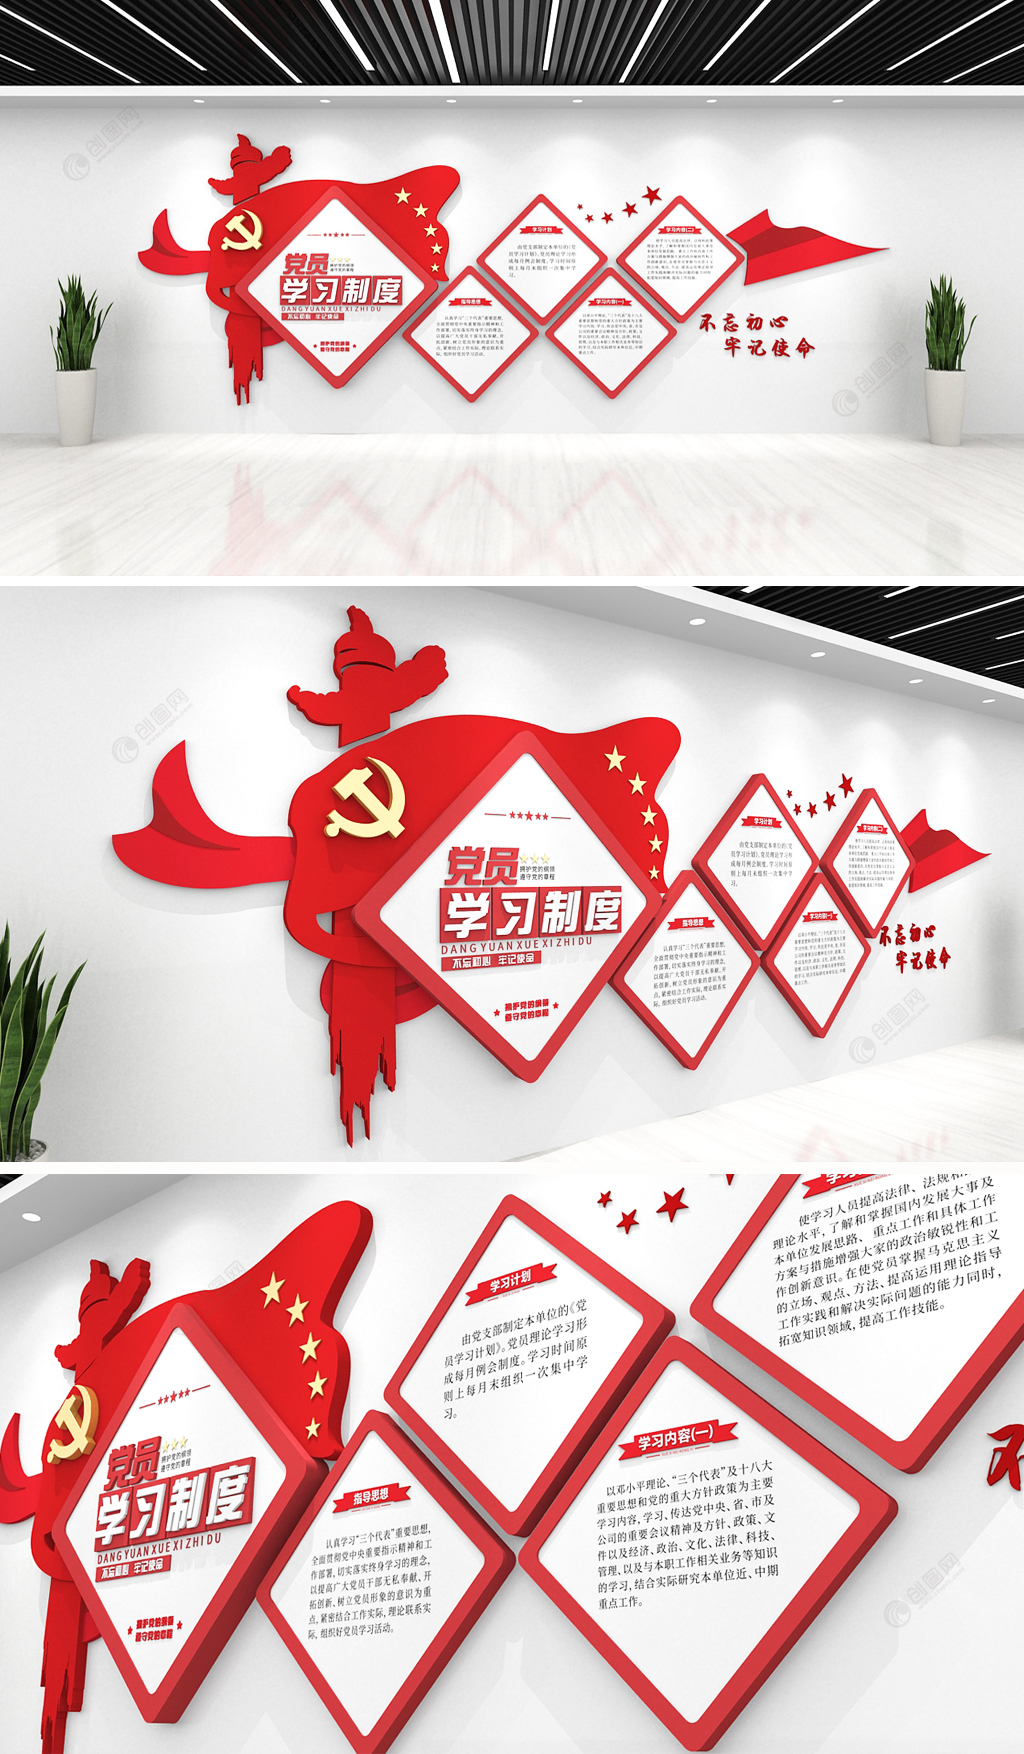 简约机关单位党员学习制度党员活动室文化墙设计